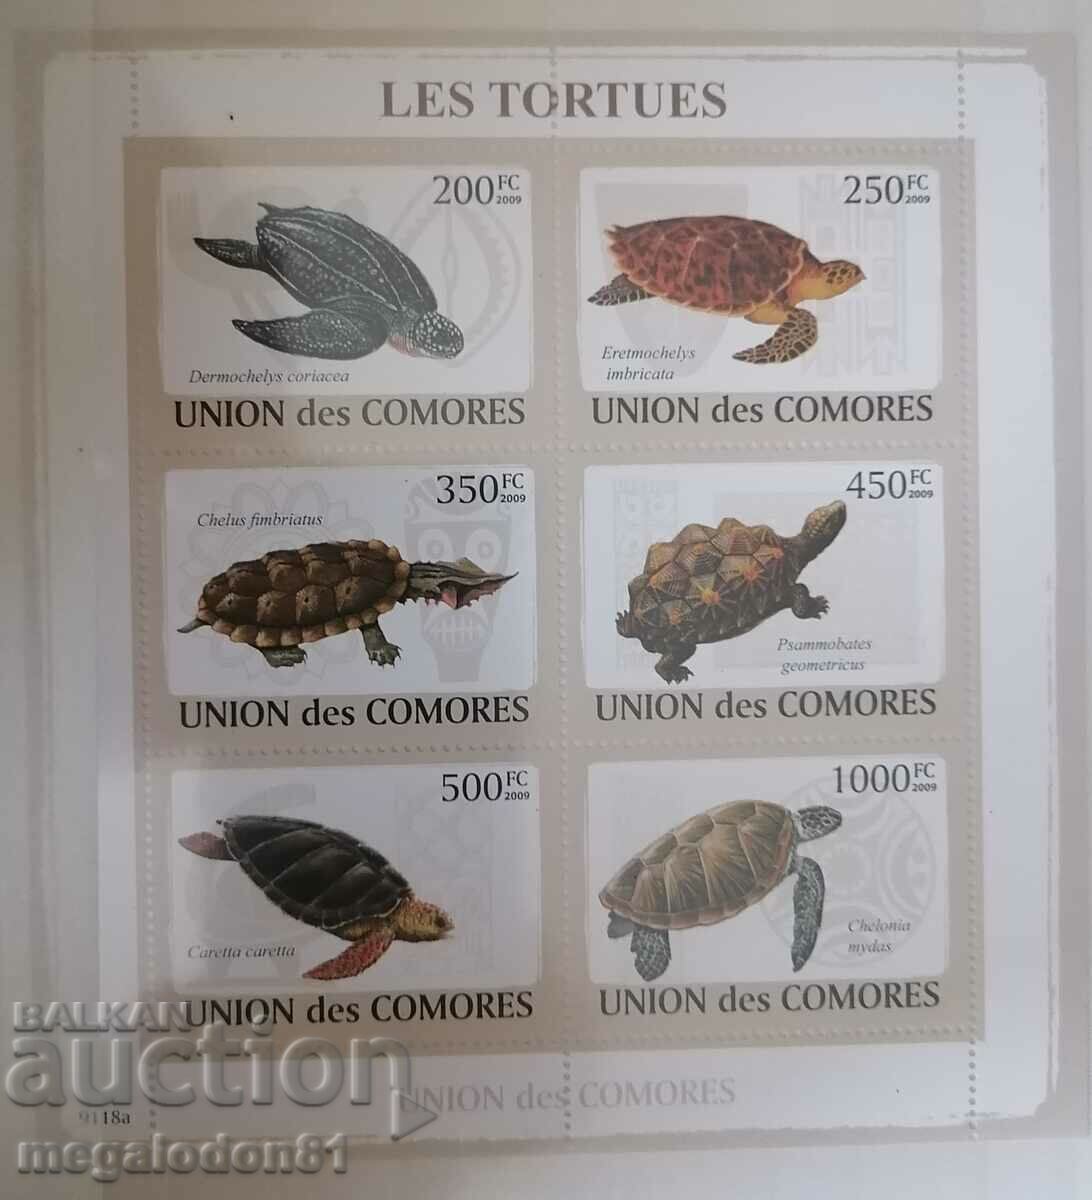 Camere - faună, țestoase marine